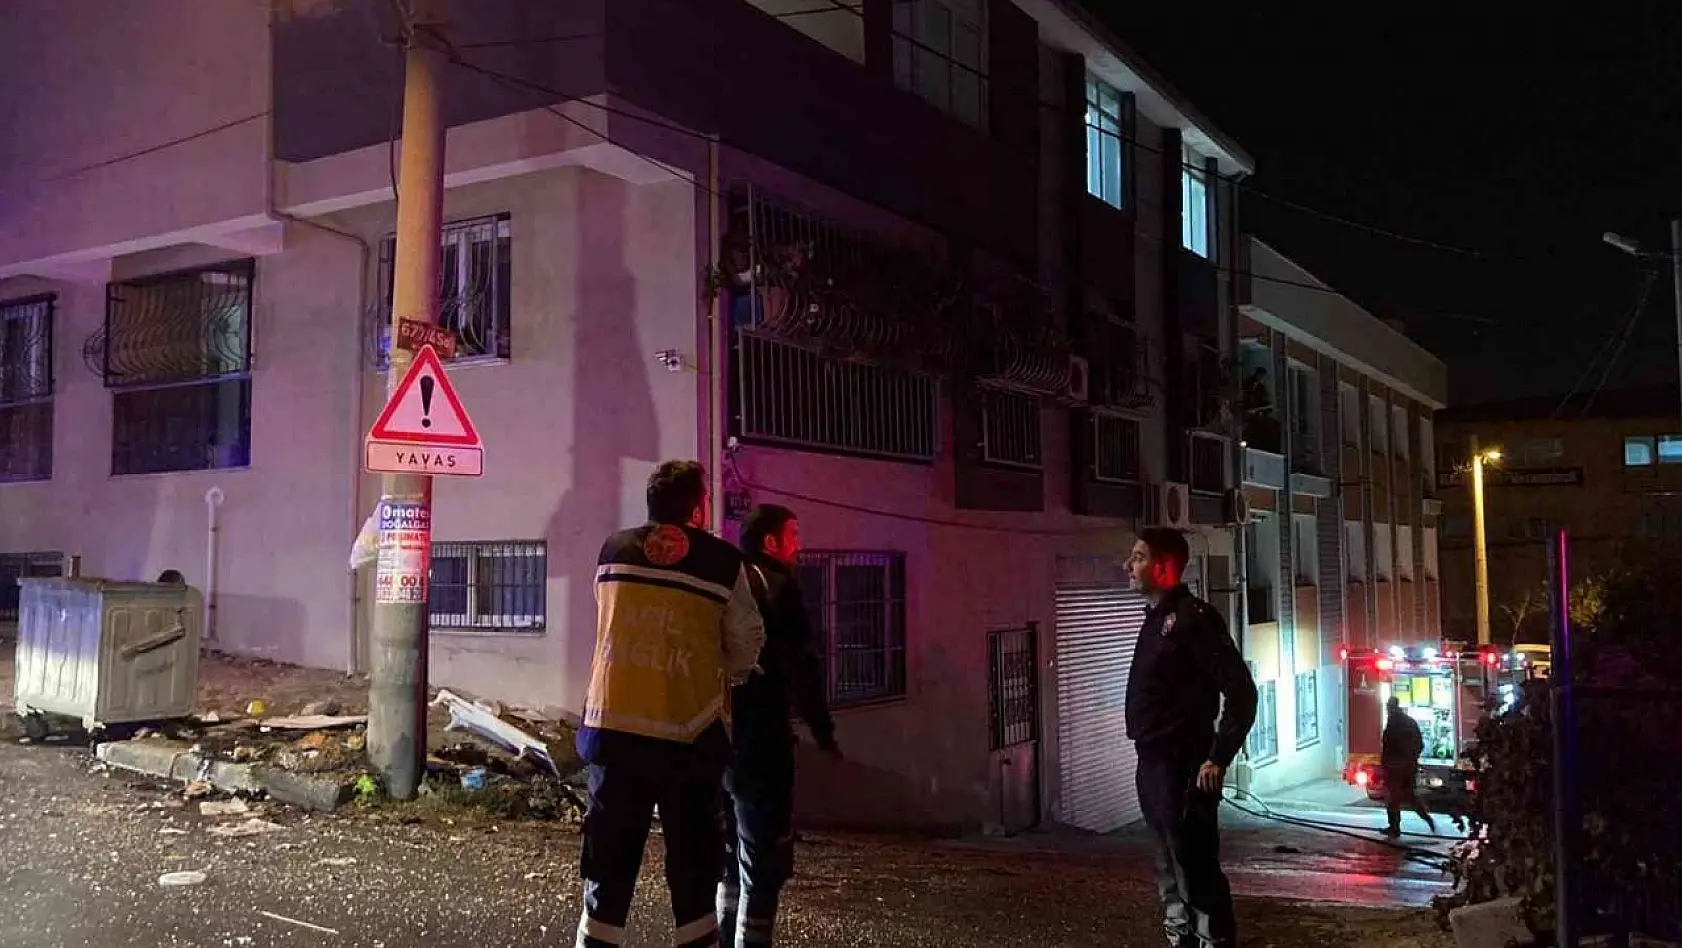 İzmir'de dini içerikli kitapları ve eşyalarını yakarak balkondan aşağı atan kadın, daha sonra da kendi evini yaktı